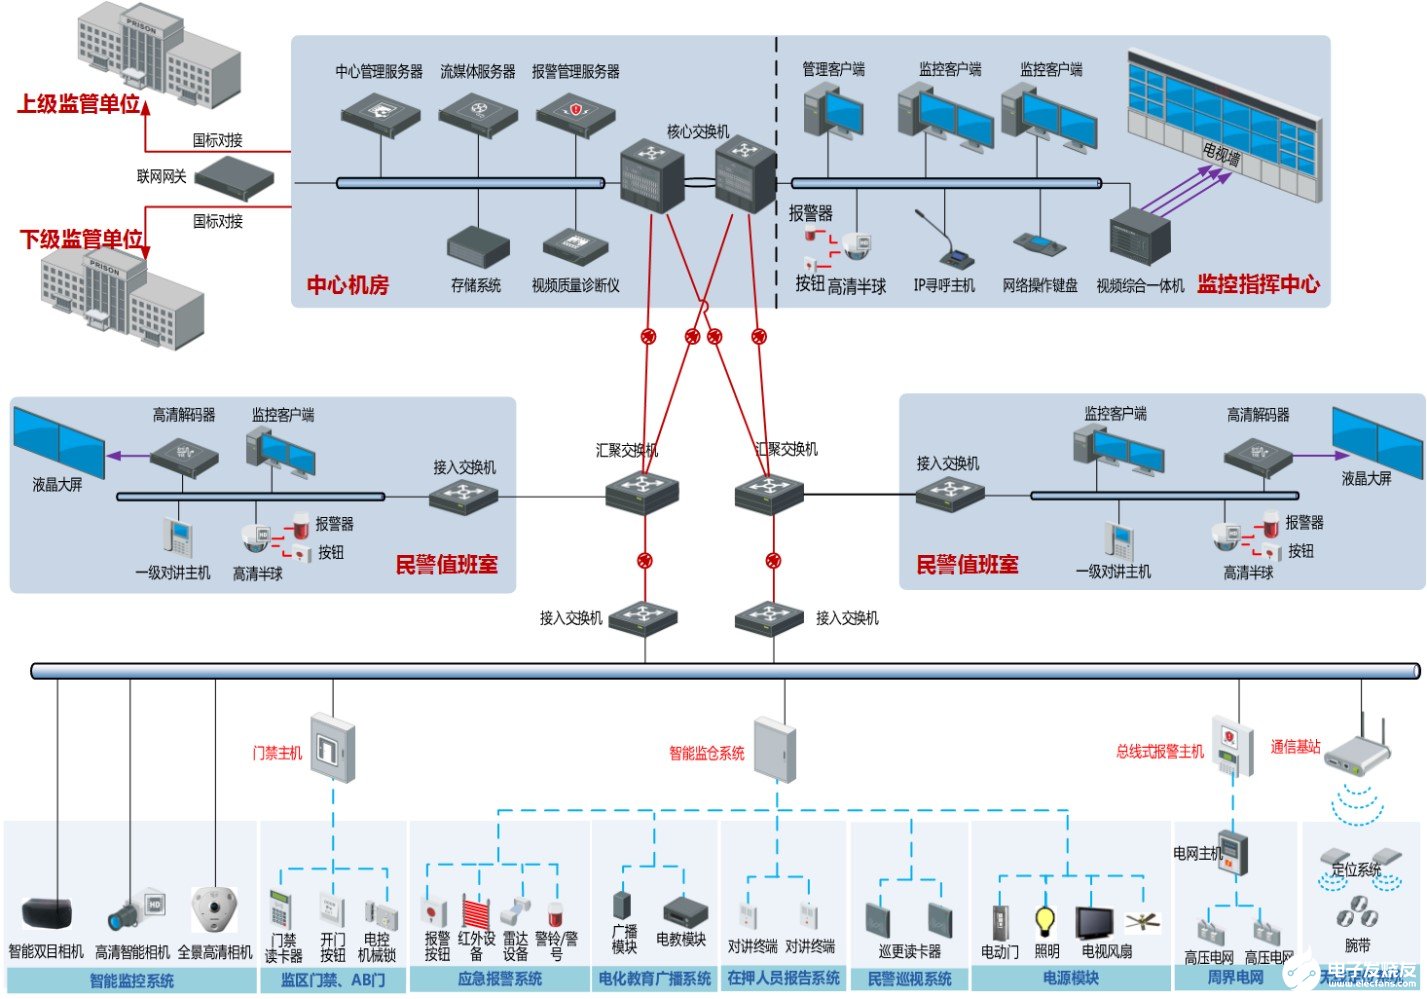 海康威视智慧型平安监所系统的功能特点及应用,海康威视智慧型平安监所系统的功能特点及应用,第2张